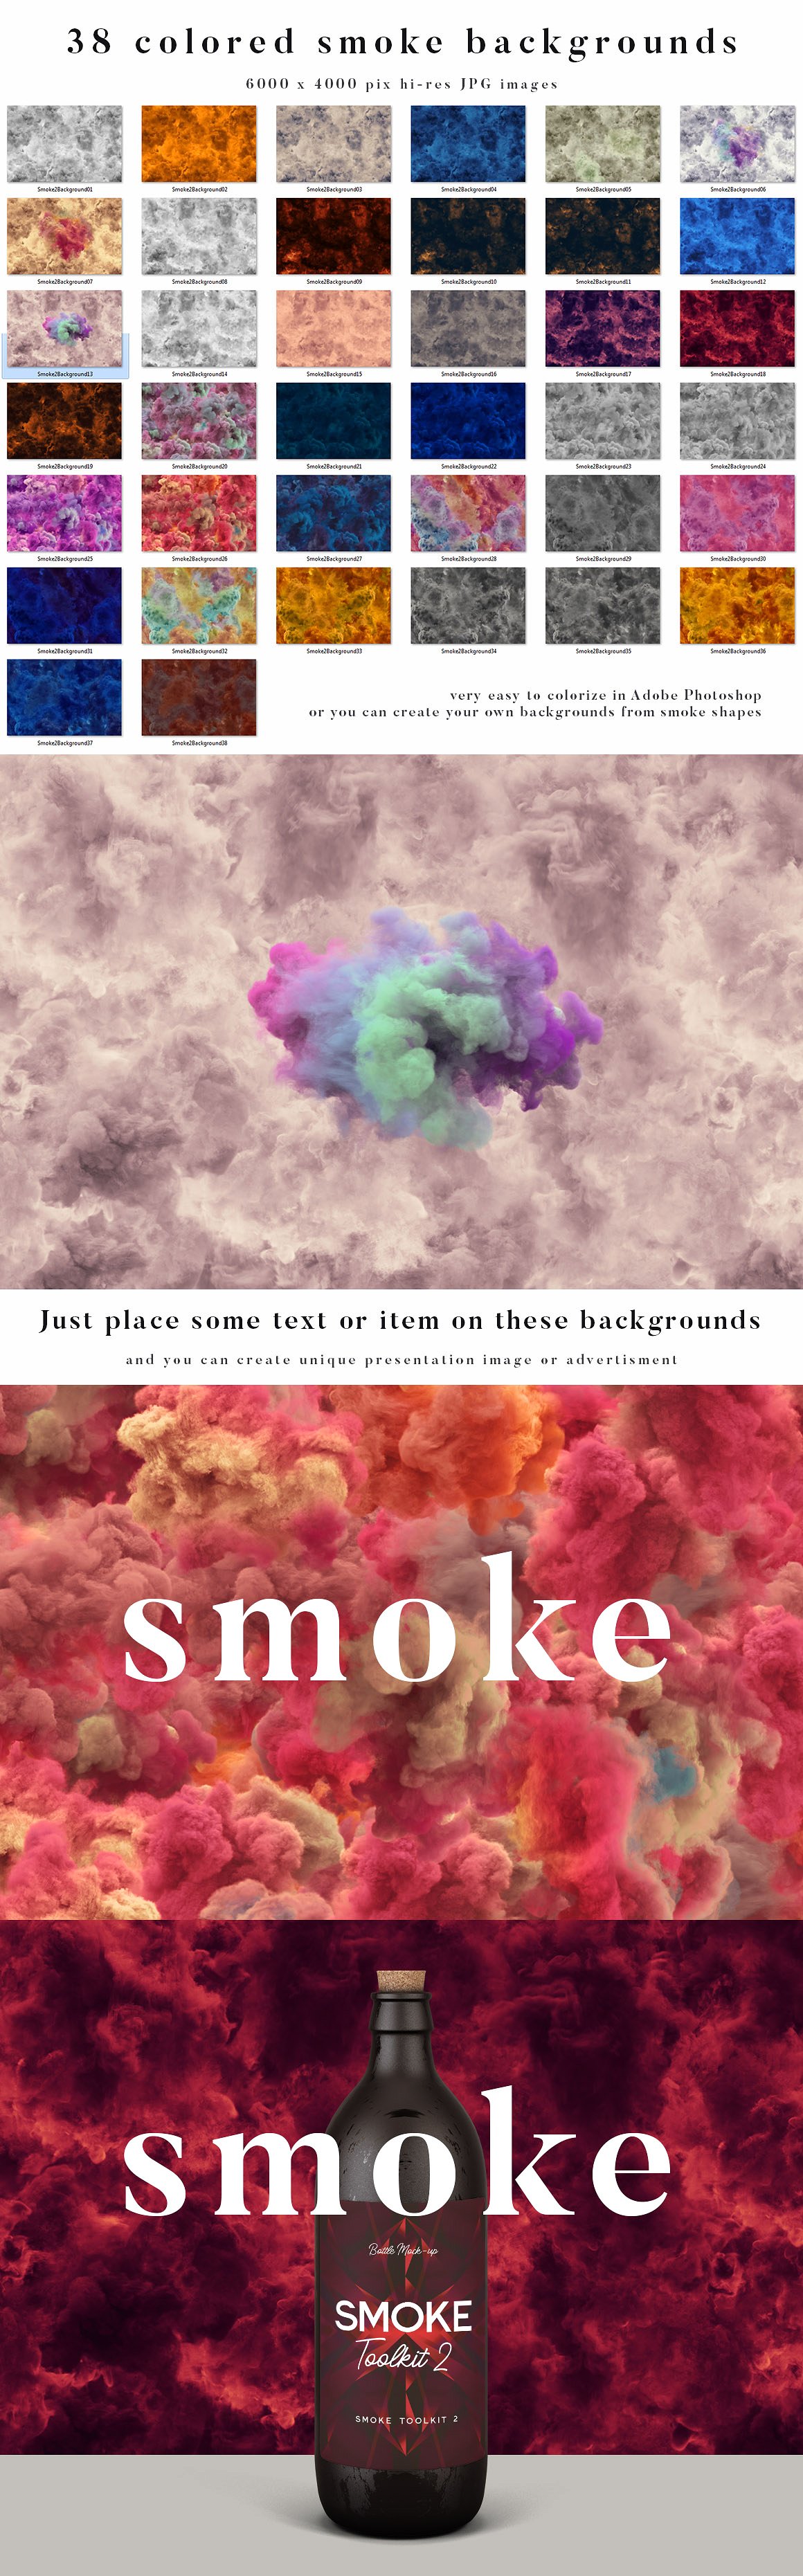 烟雾萦绕视觉特效PS素材大礼包[3.03GB] Smoke Toolkit 2插图(9)